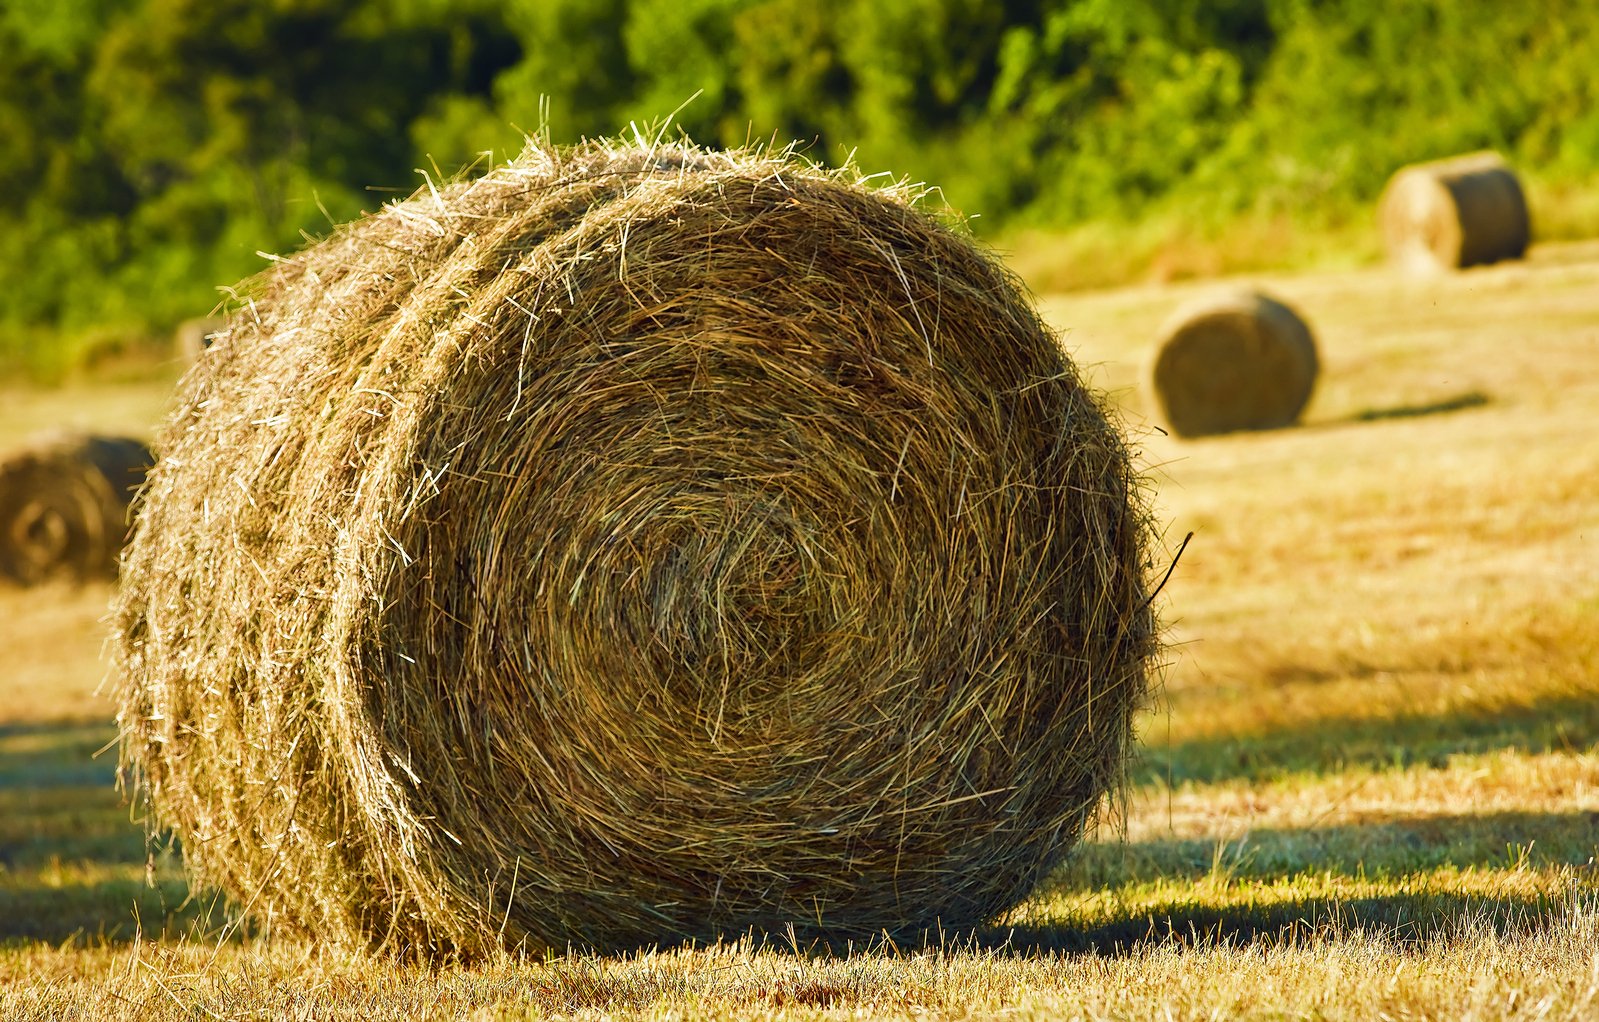 bale-of-hay-1347040.jpg